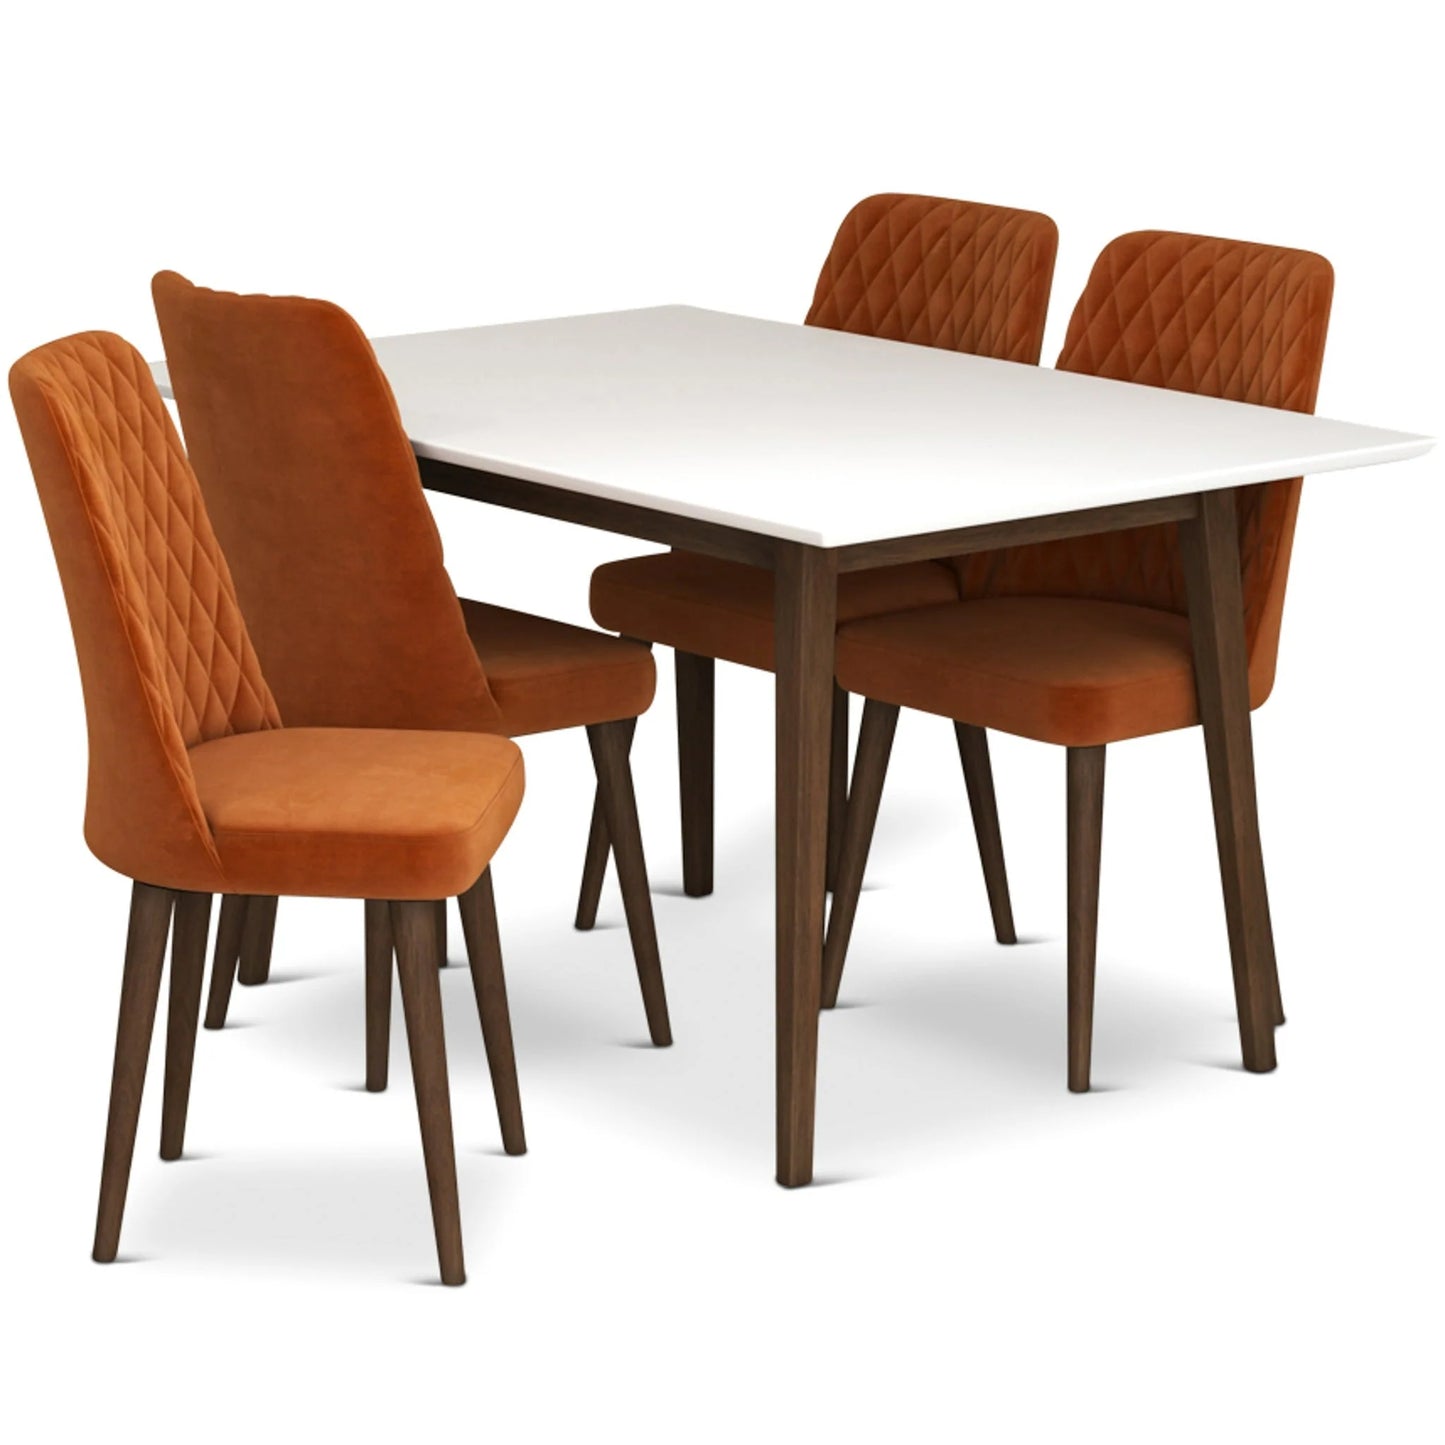 Adira (Small - White) Dining Set with 4 Evette (Burnt Orange Velvet) Dining Chairs